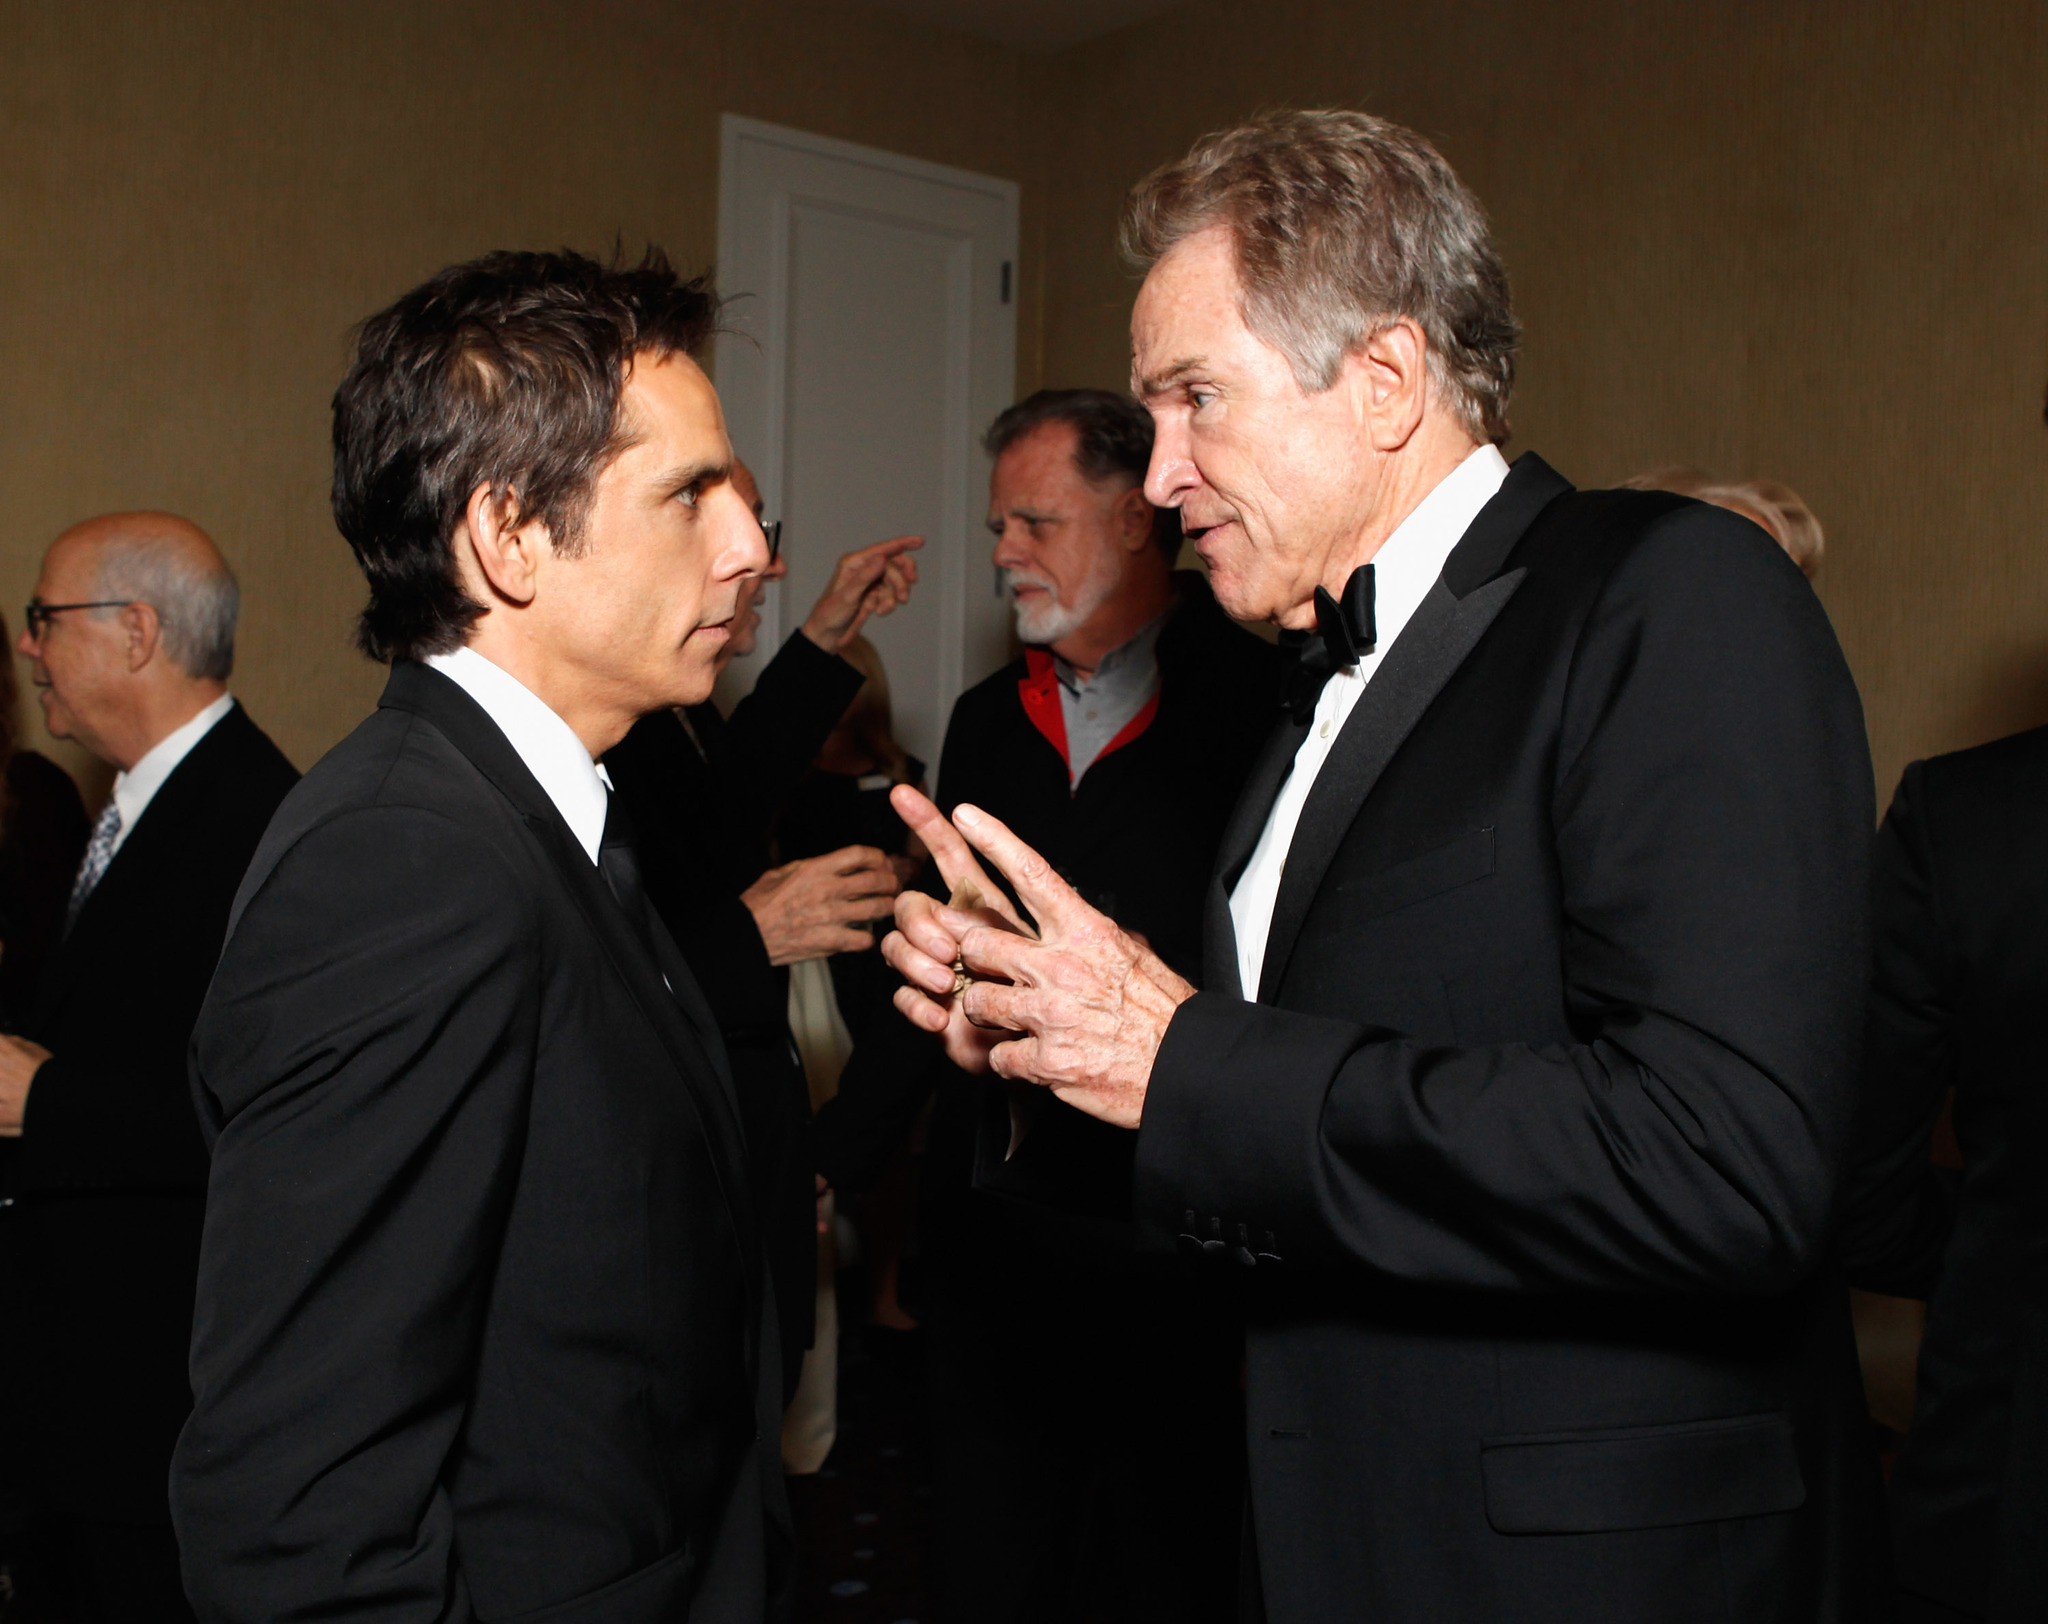 Warren Beatty and Ben Stiller